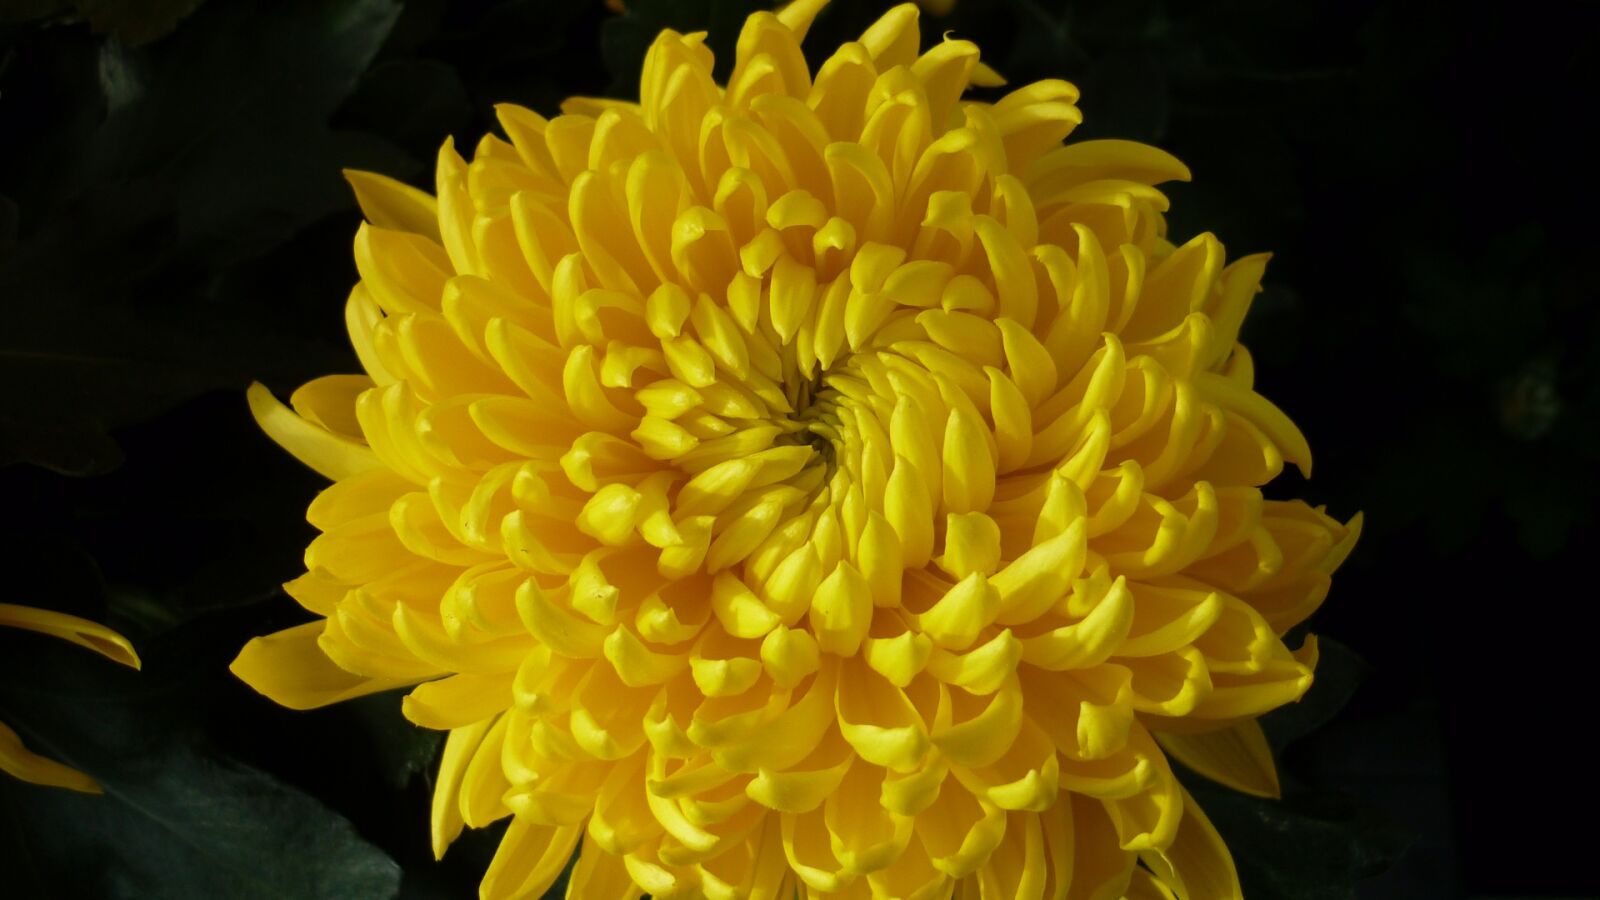 Panasonic Lumix DMC-FS6 sample photo. Chrysanthemum, flower, yellow photography